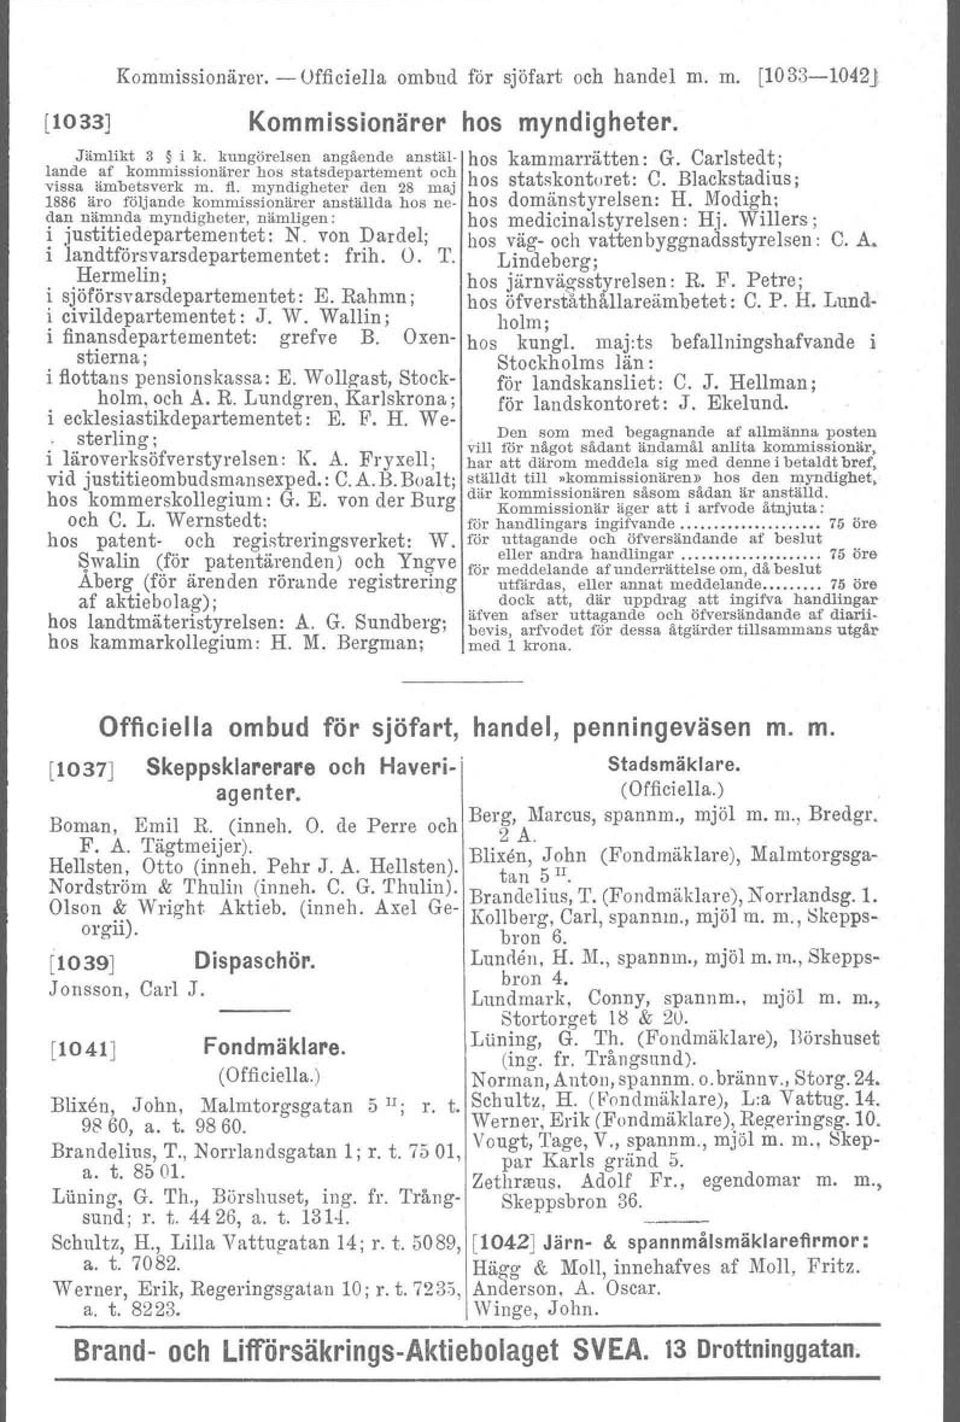 myndigheter den 28 maj 1886 äro följande kommissionärer anställda hos neo hos domänstyrelsen: H. Modigh: dan nämnda myndigheter, nämligen: hos medicinalstyrelsen : Hj.